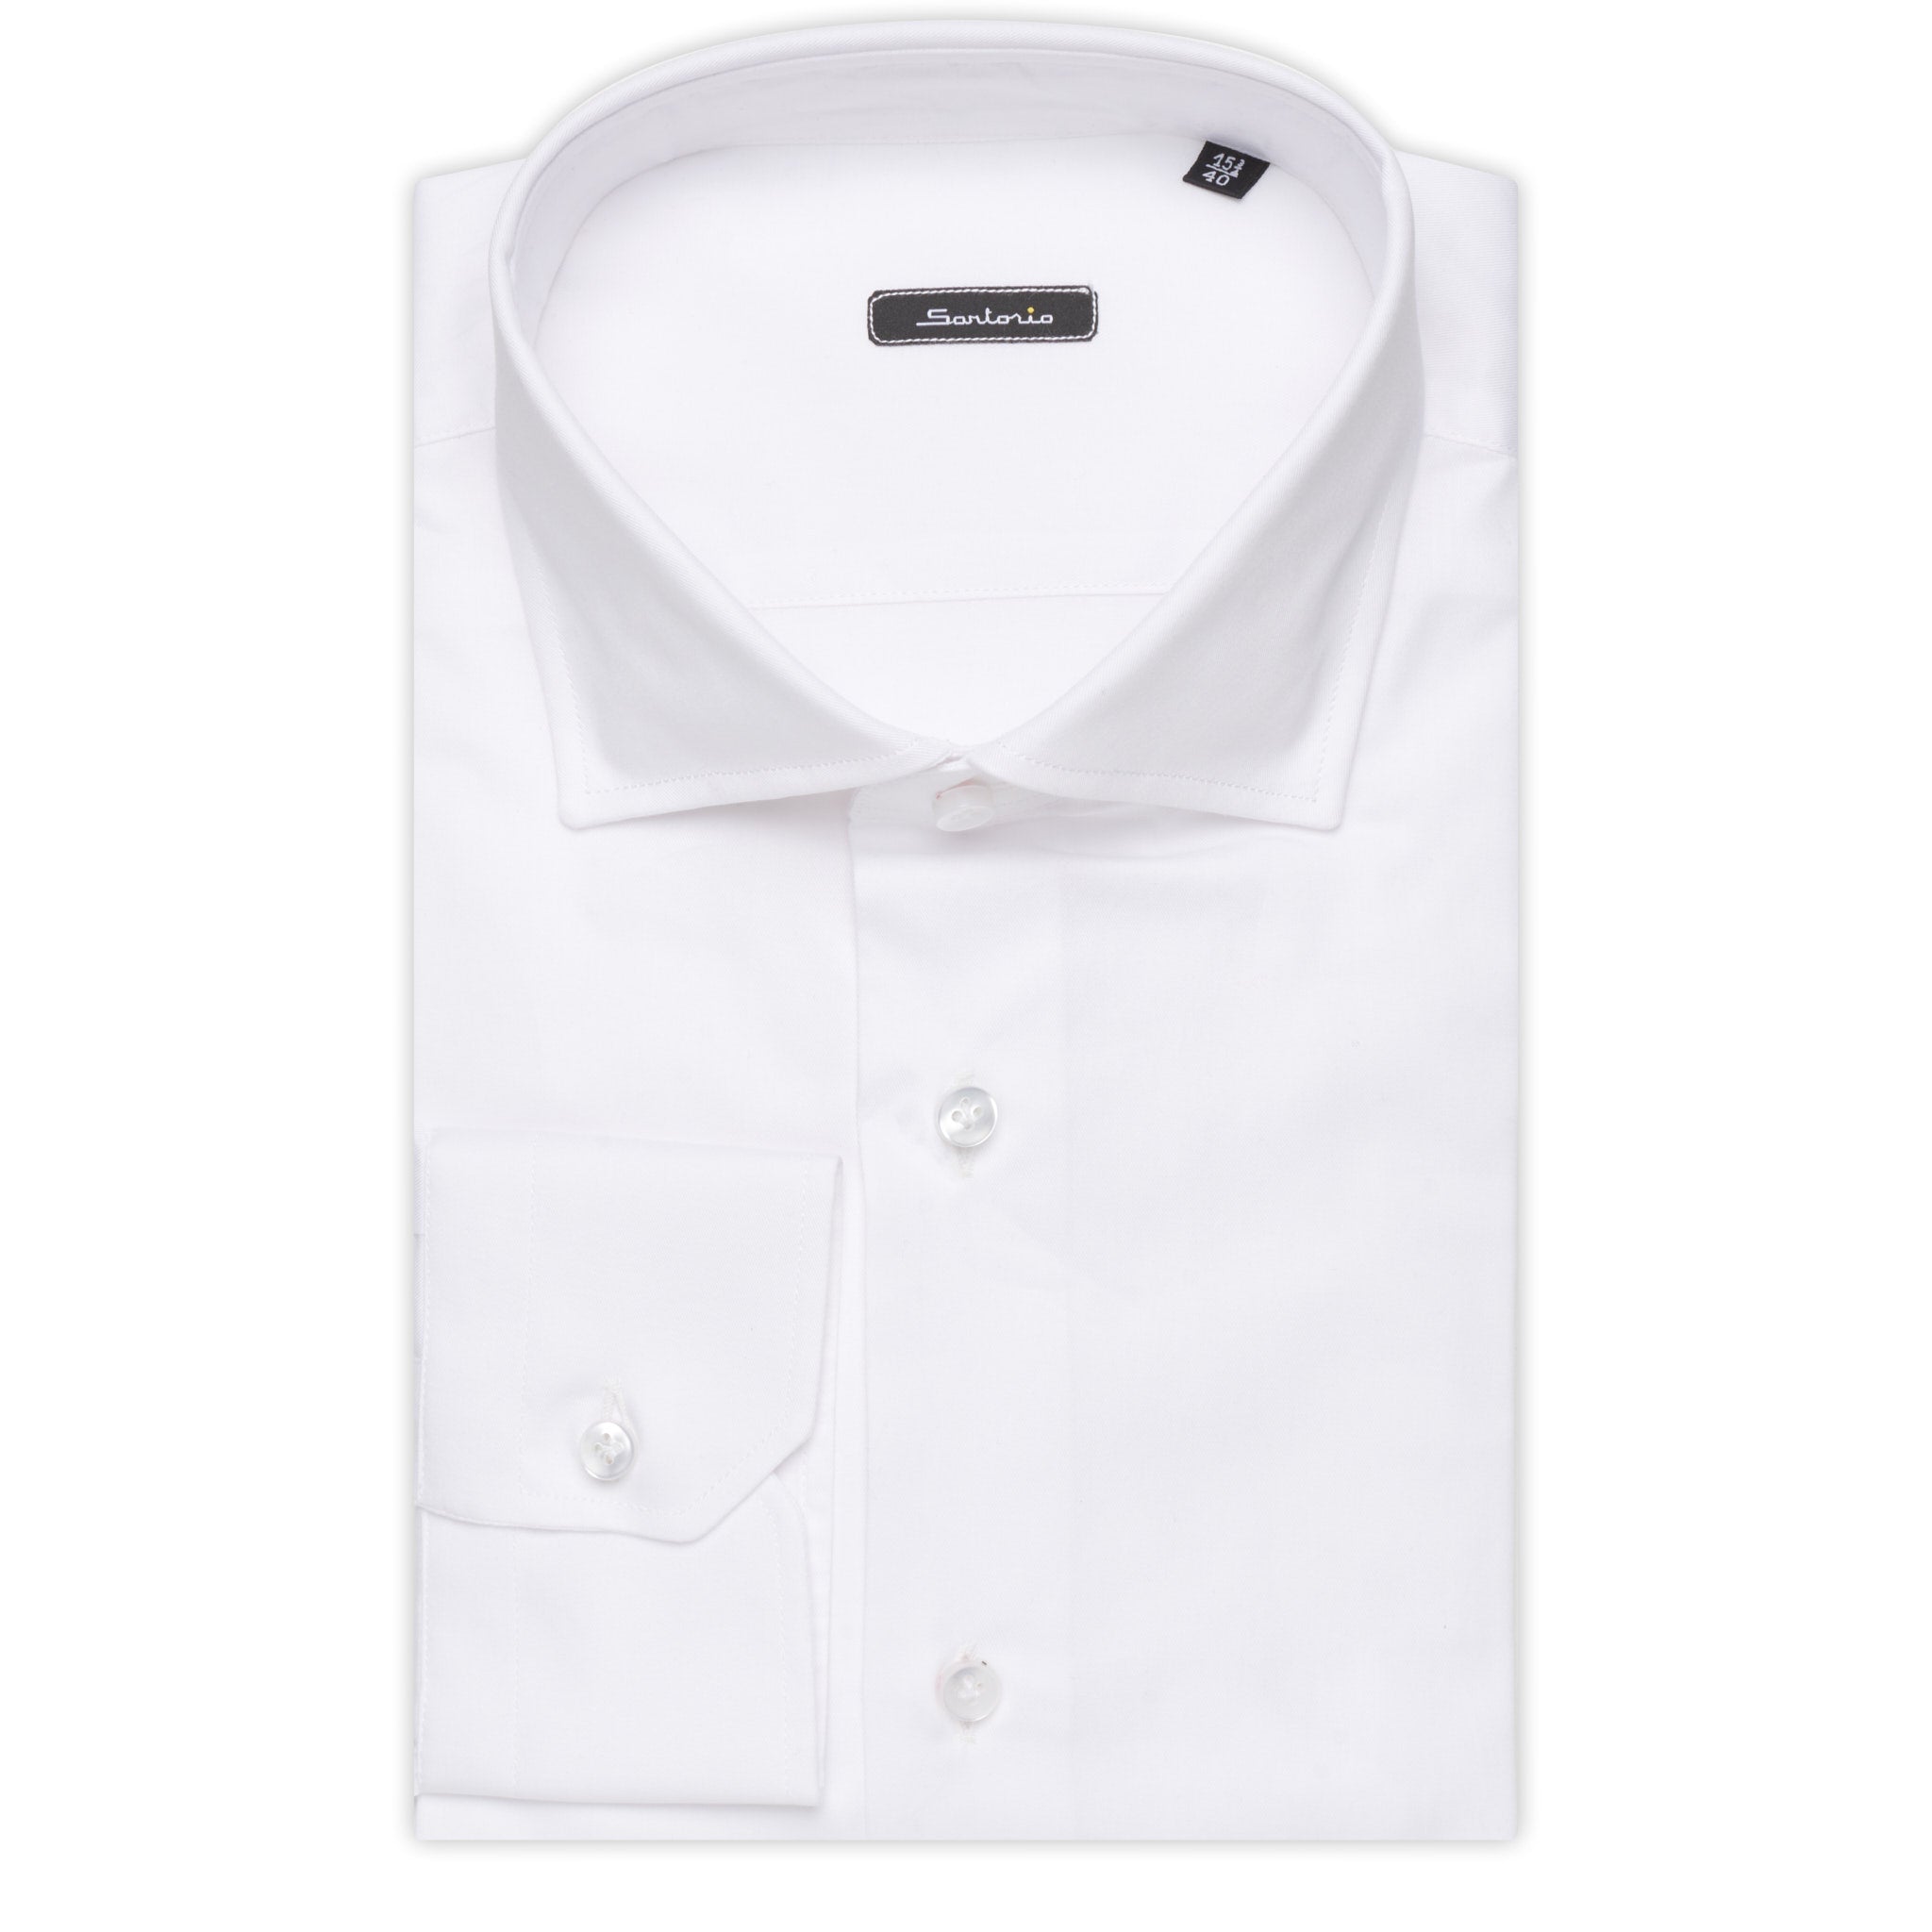 SARTORIO Napoli by KITON White Twill Cotton Dress Shirt NEW Slim Fit SARTORIO